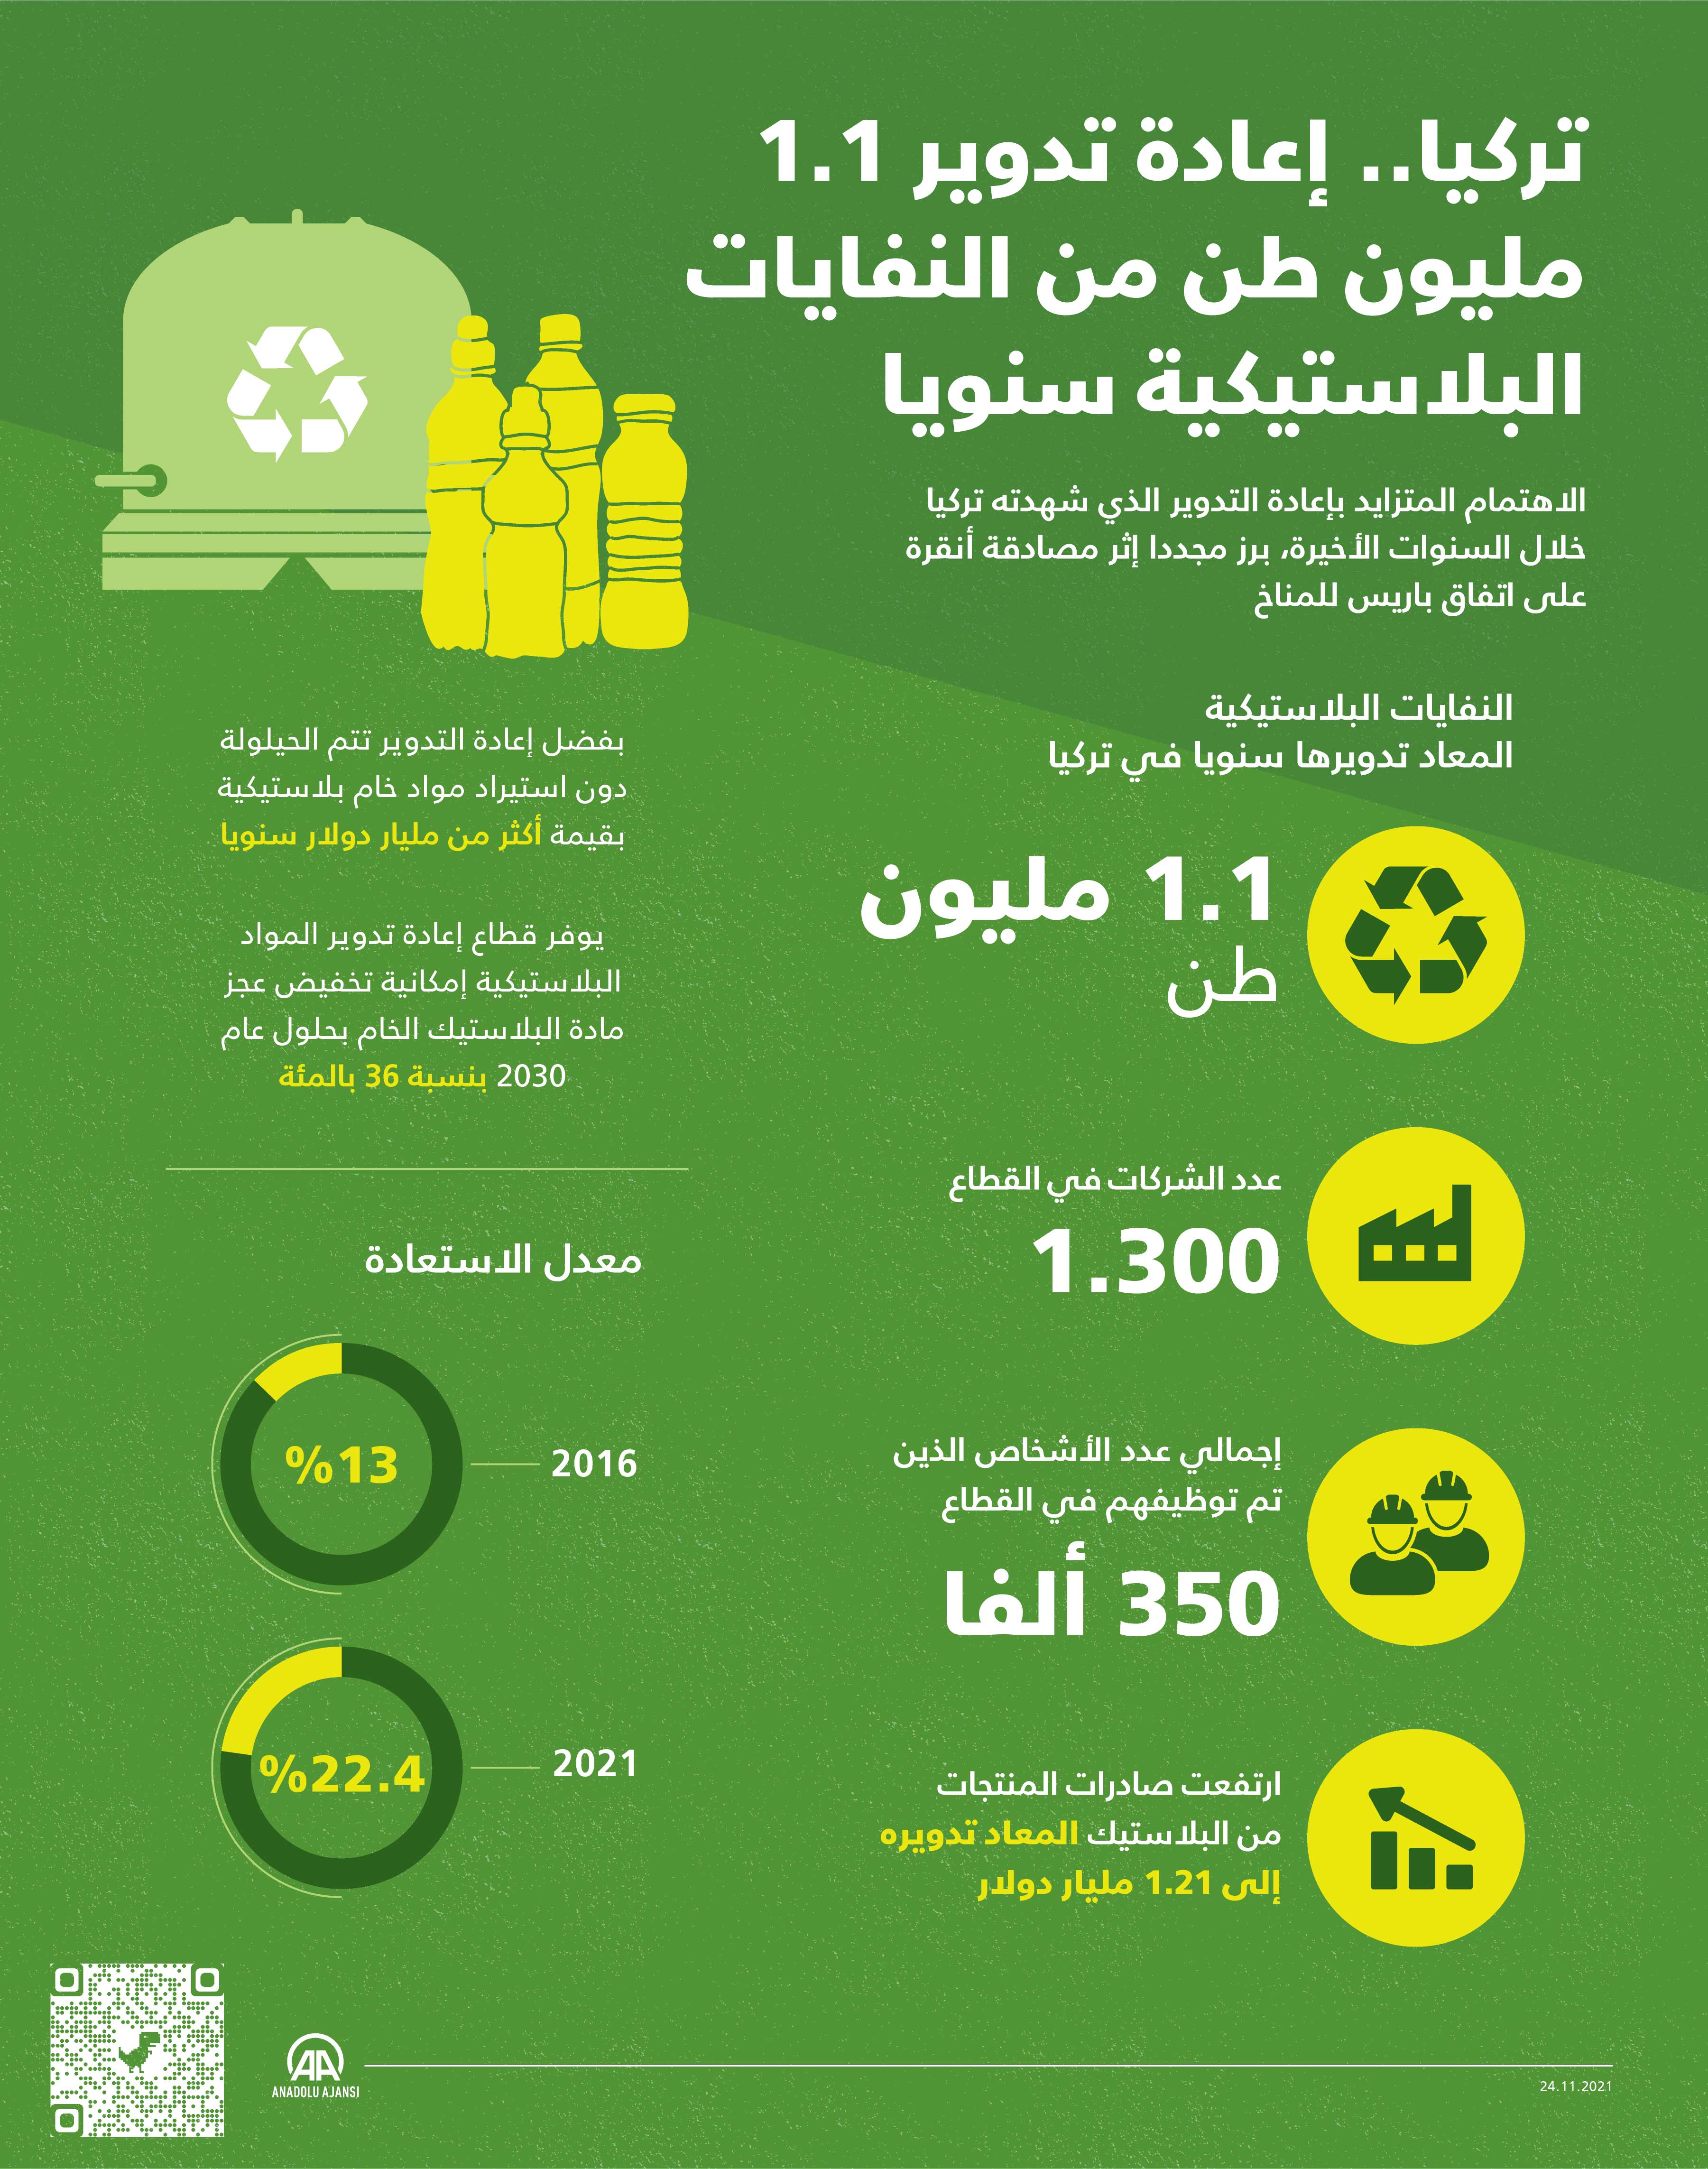 تركيا.. إعادة تدوير 1.1 مليون طن من النفايات البلاستيكية سنويا